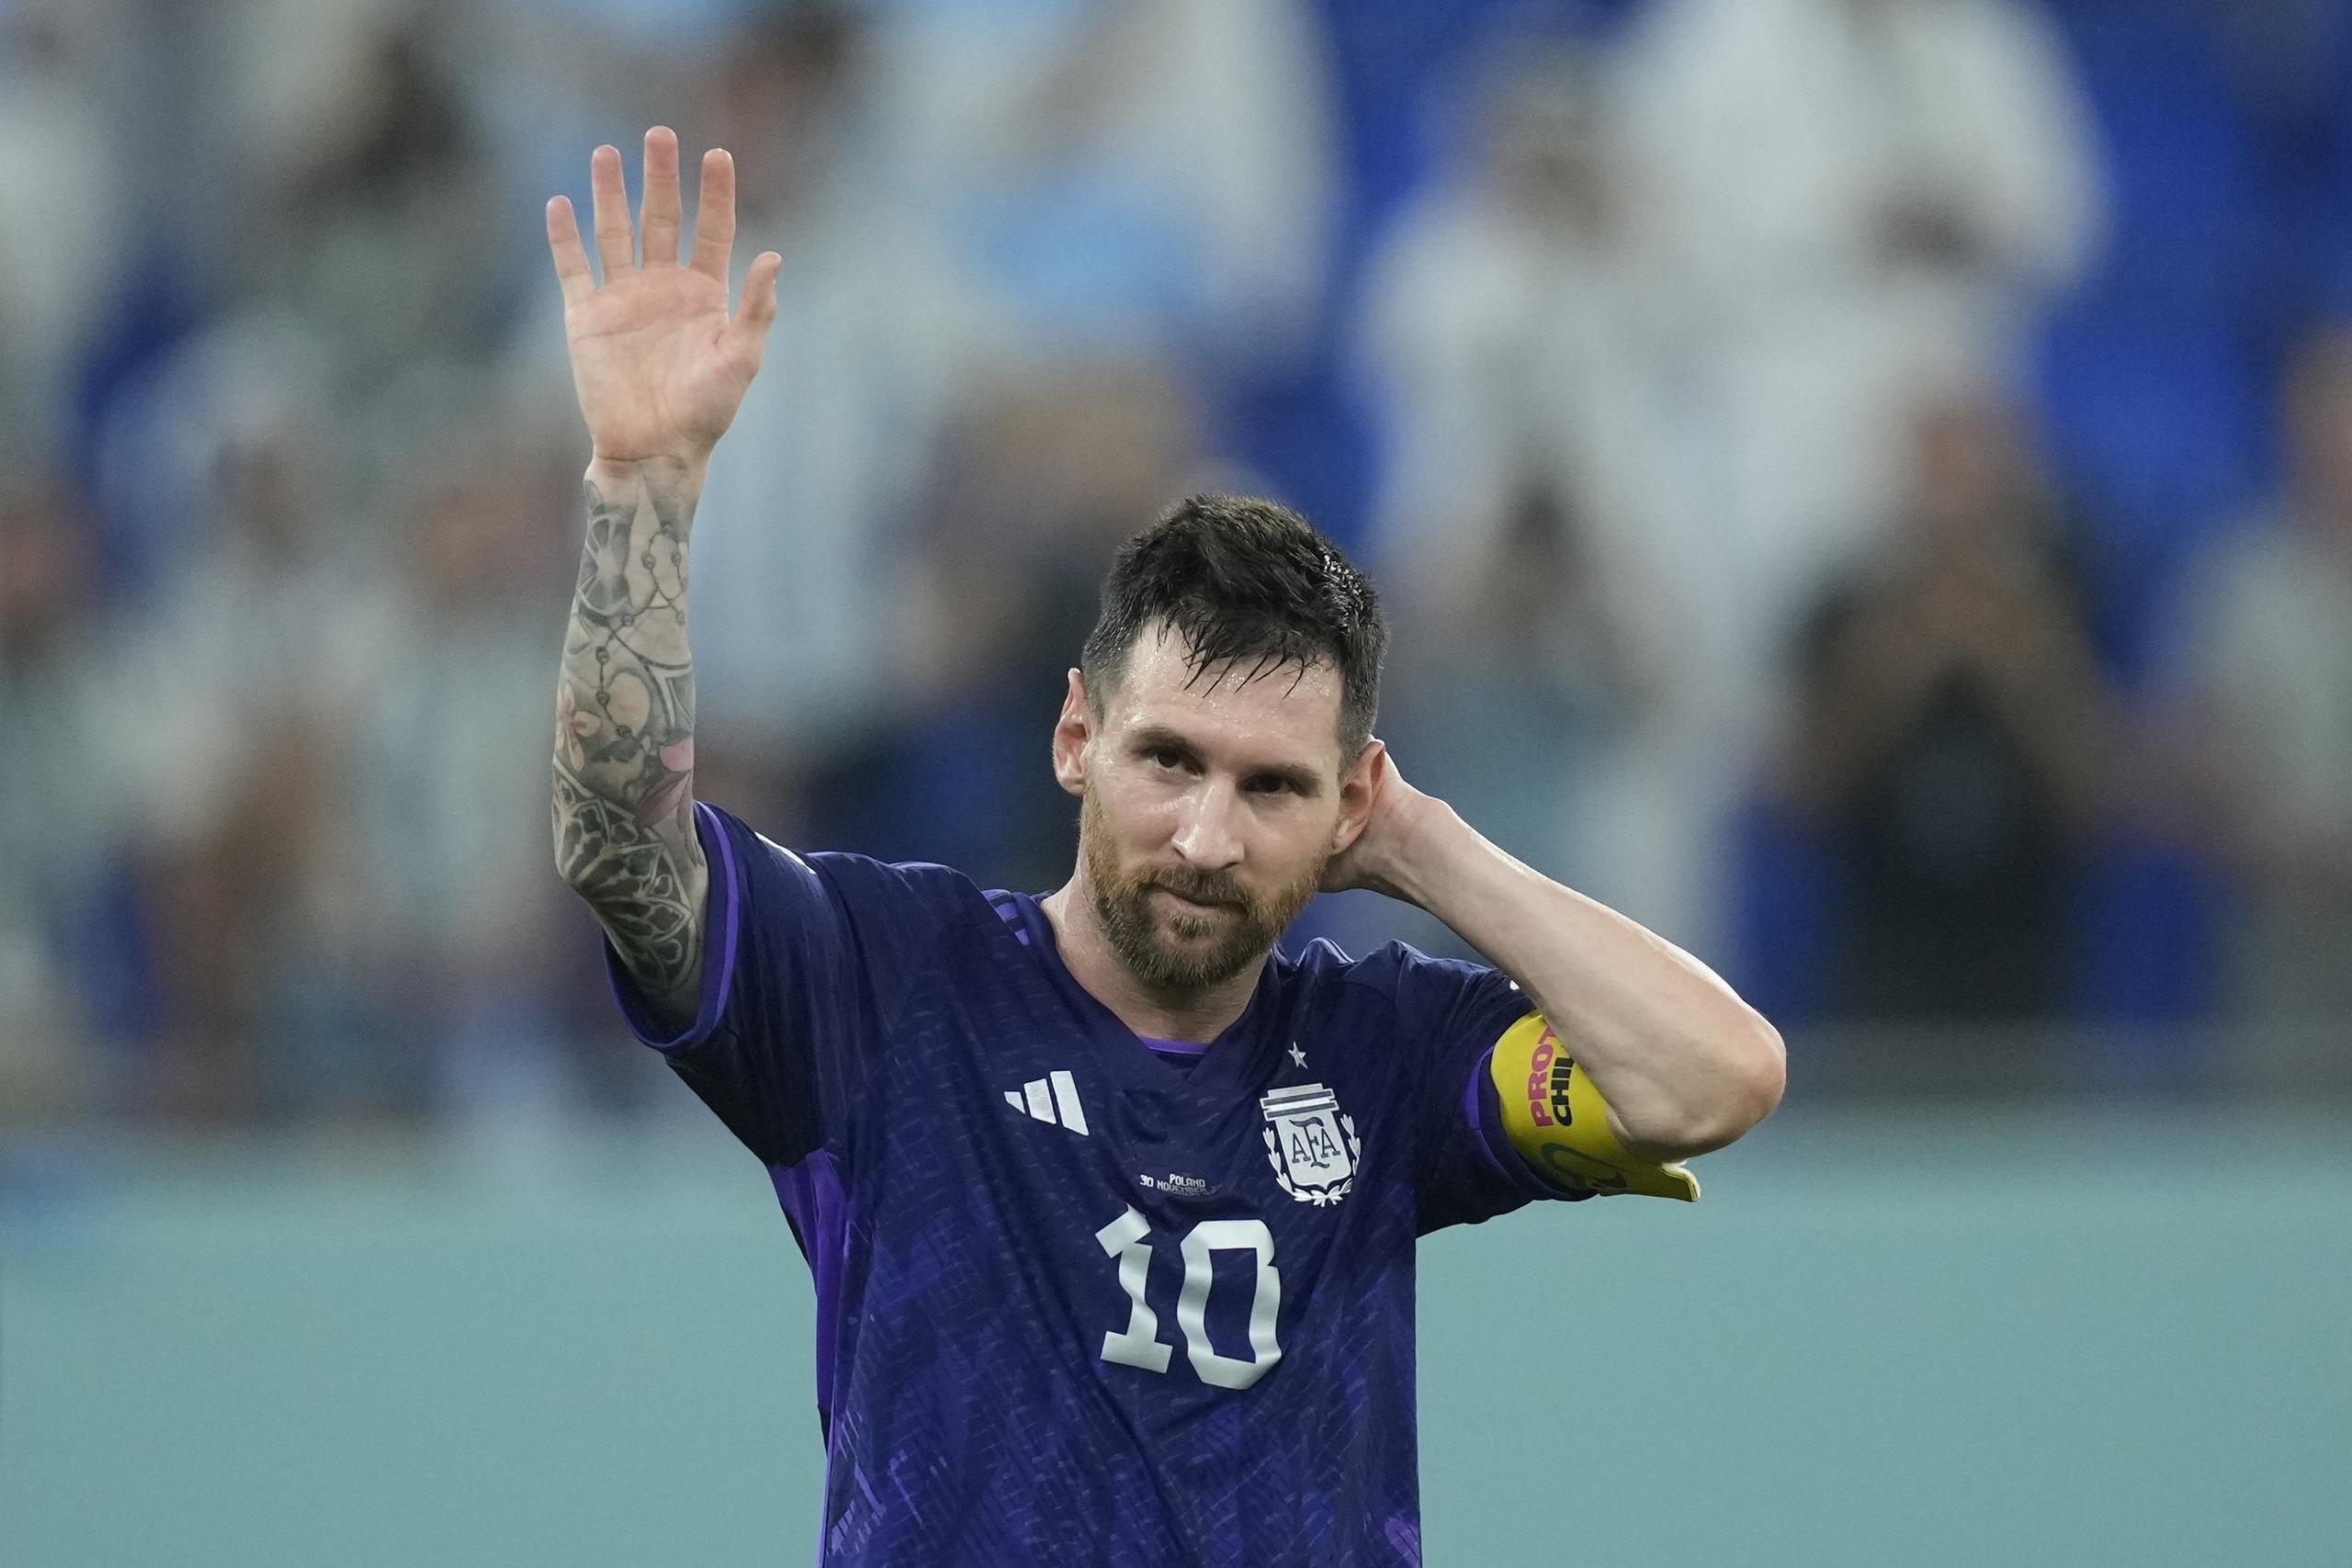 El delantero Lionel Messi lidera a un equipo argentino que, tras un inicio dudoso, mejoró y podría ser candidato al campeonato.